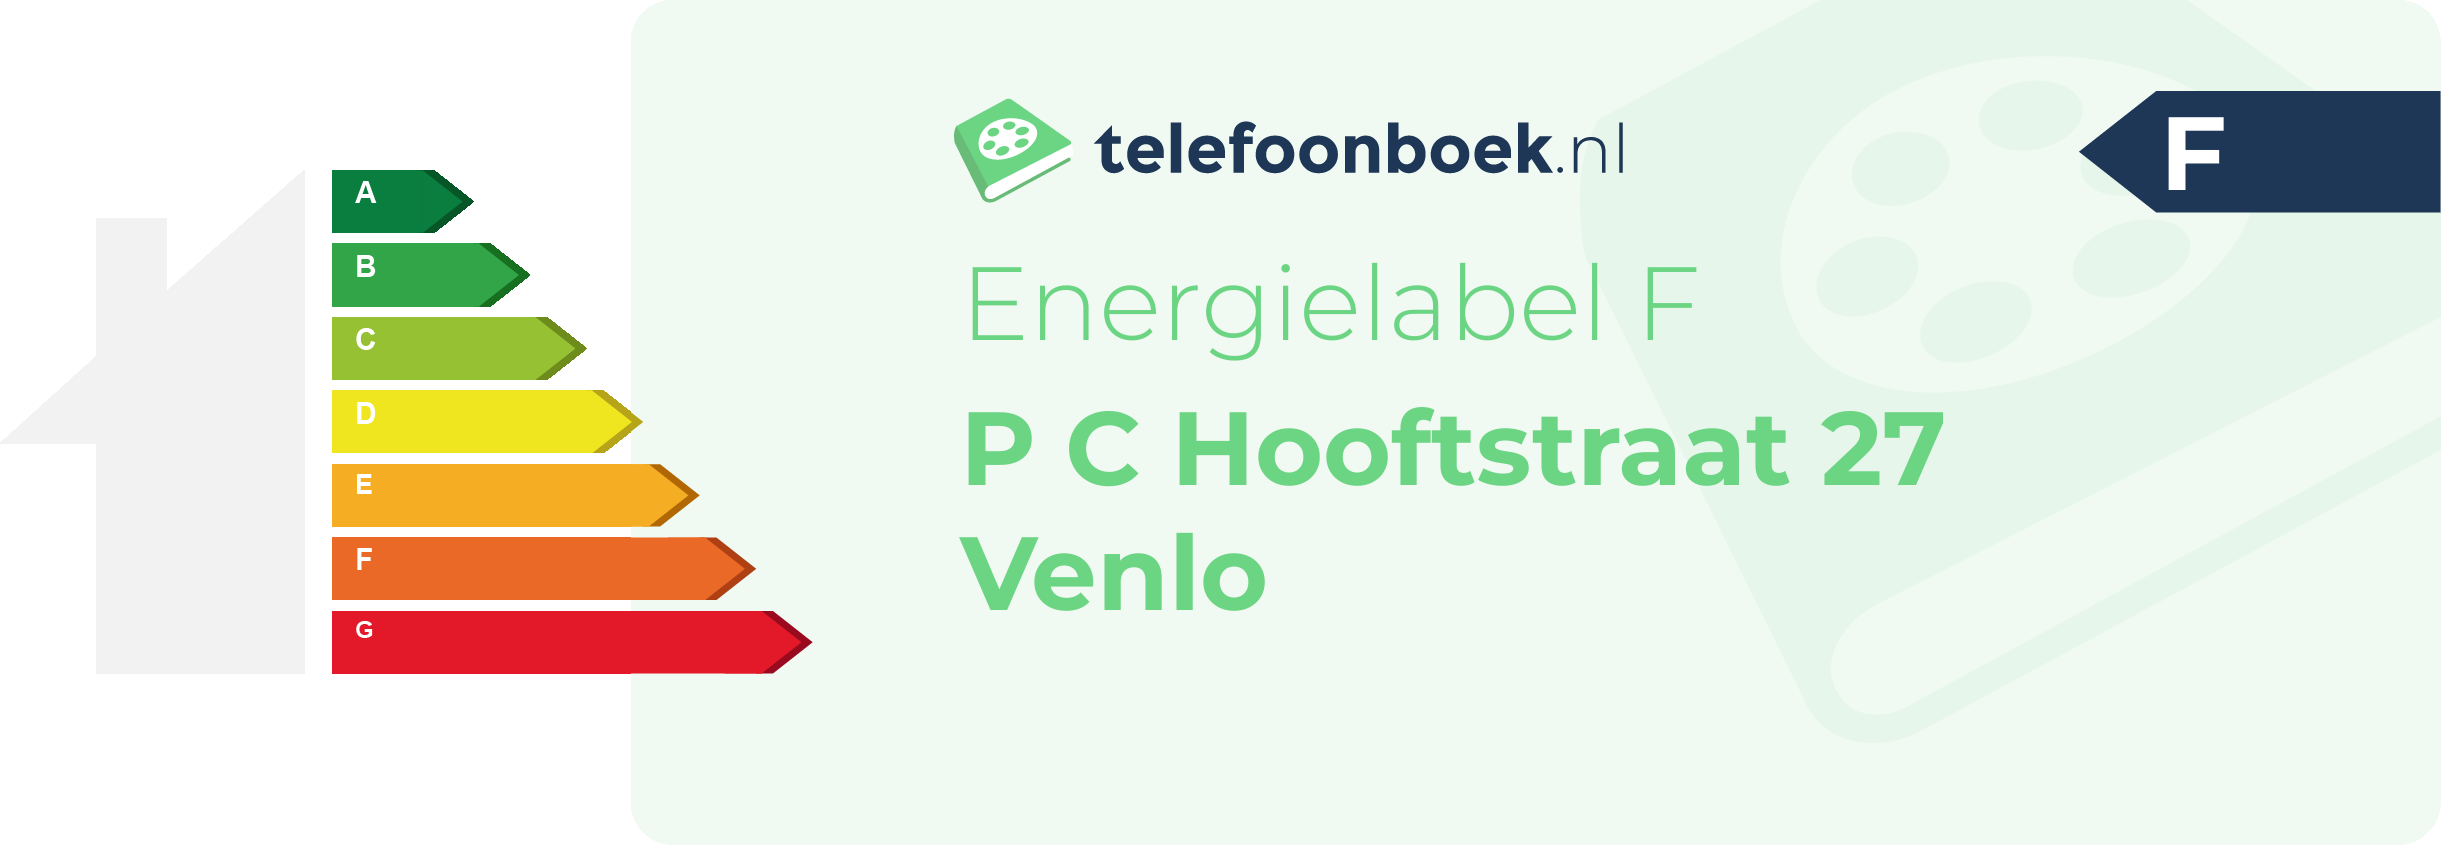 Energielabel P C Hooftstraat 27 Venlo